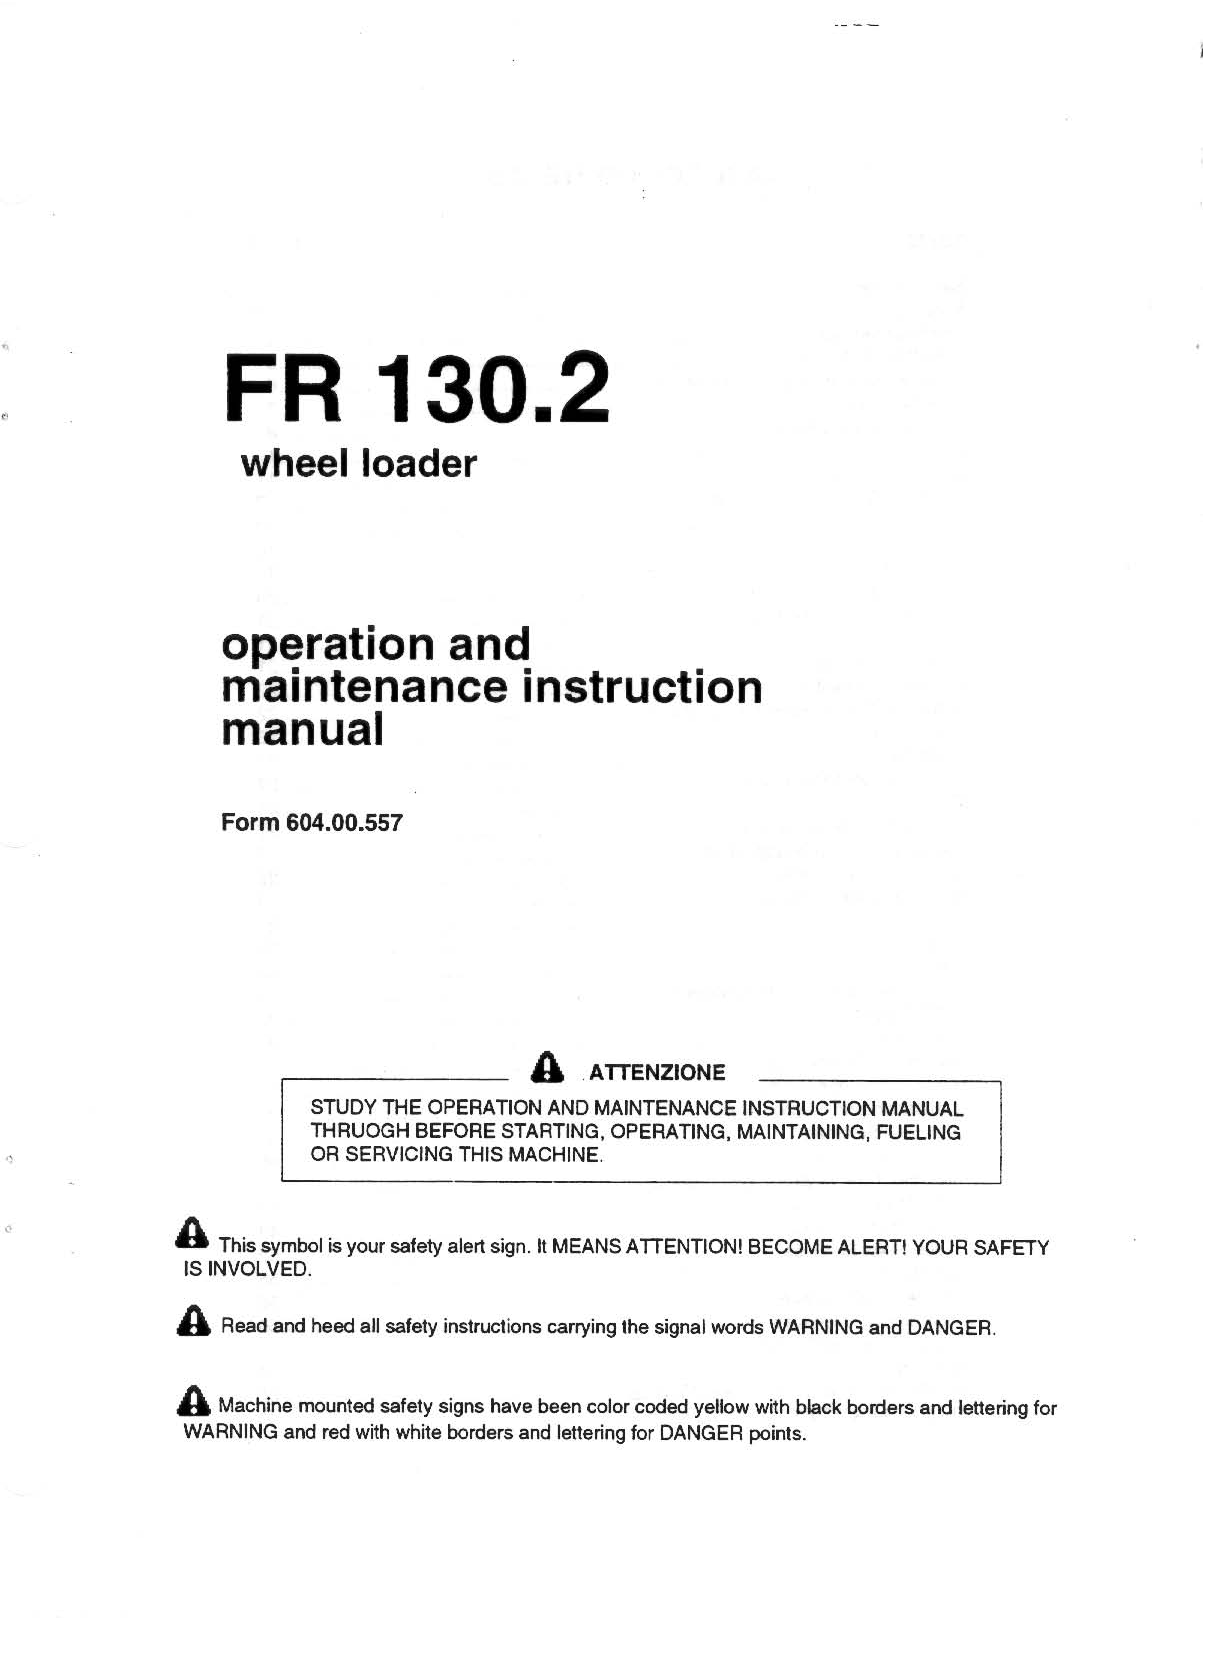 Fiat Allis FR 130, FR 130.2 Wheel Loader manual Preview image 2